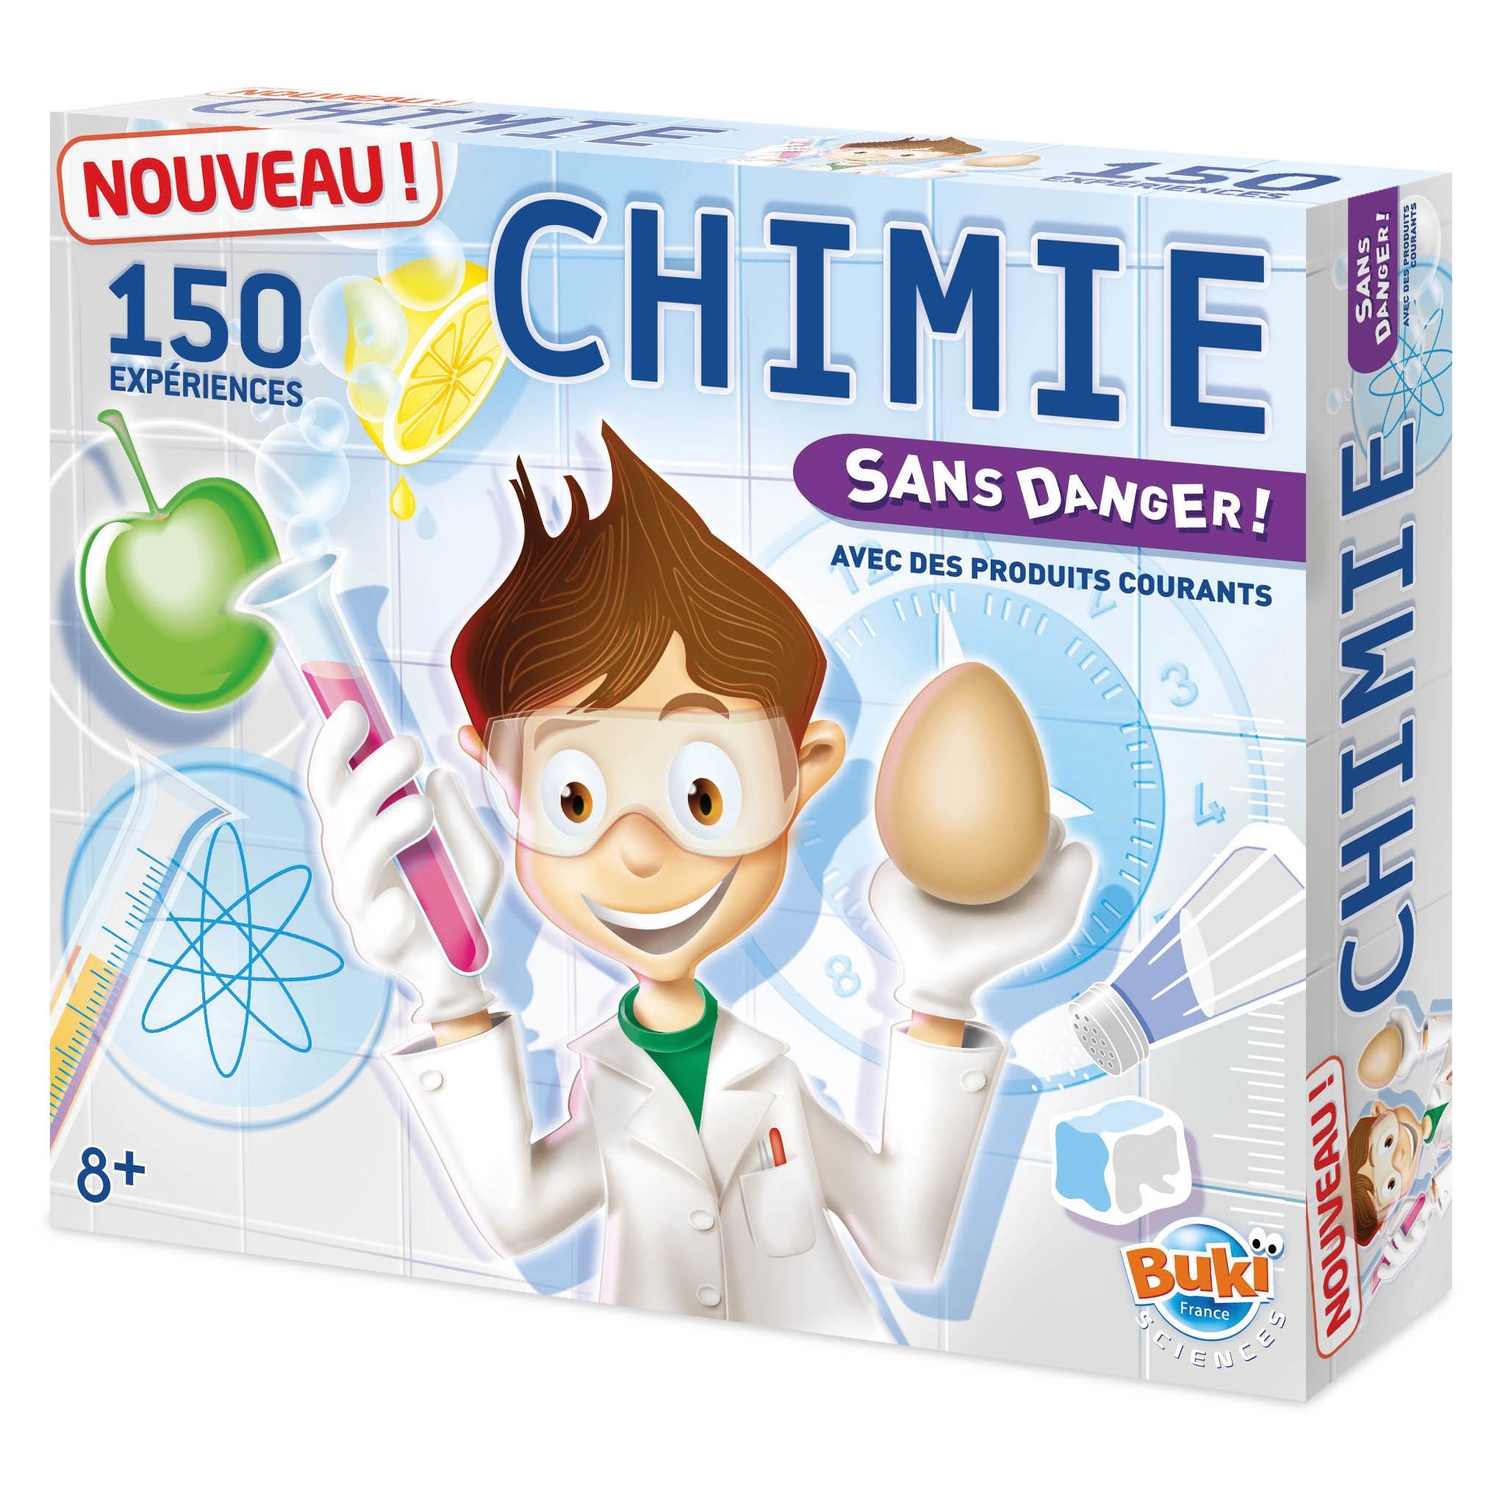 Chimie Chemistry - 150 expériences sans danger